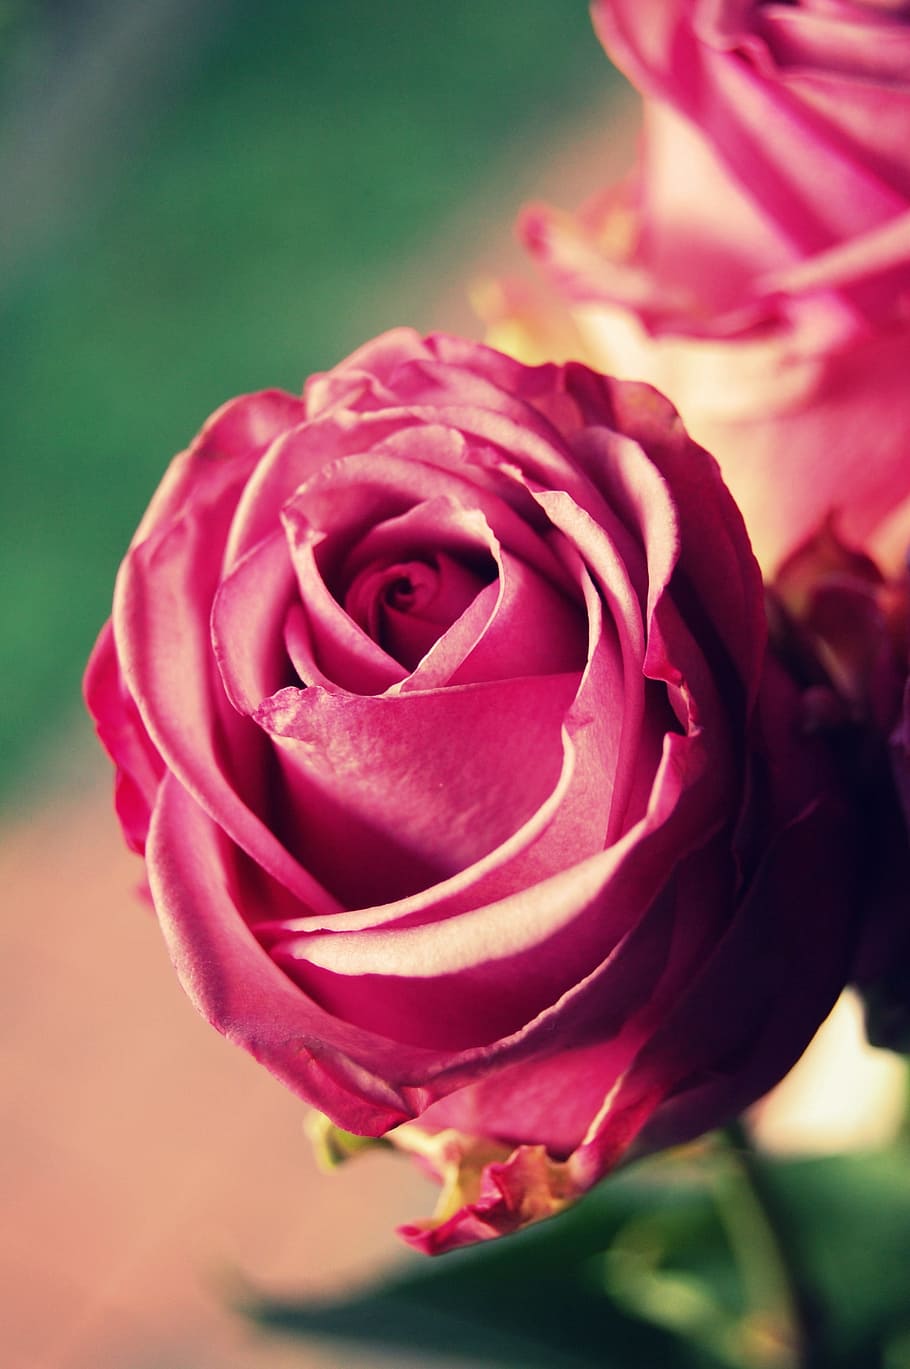 flower, rose, nature, petal, romance, amorous, floral, flowers, bouquet, give